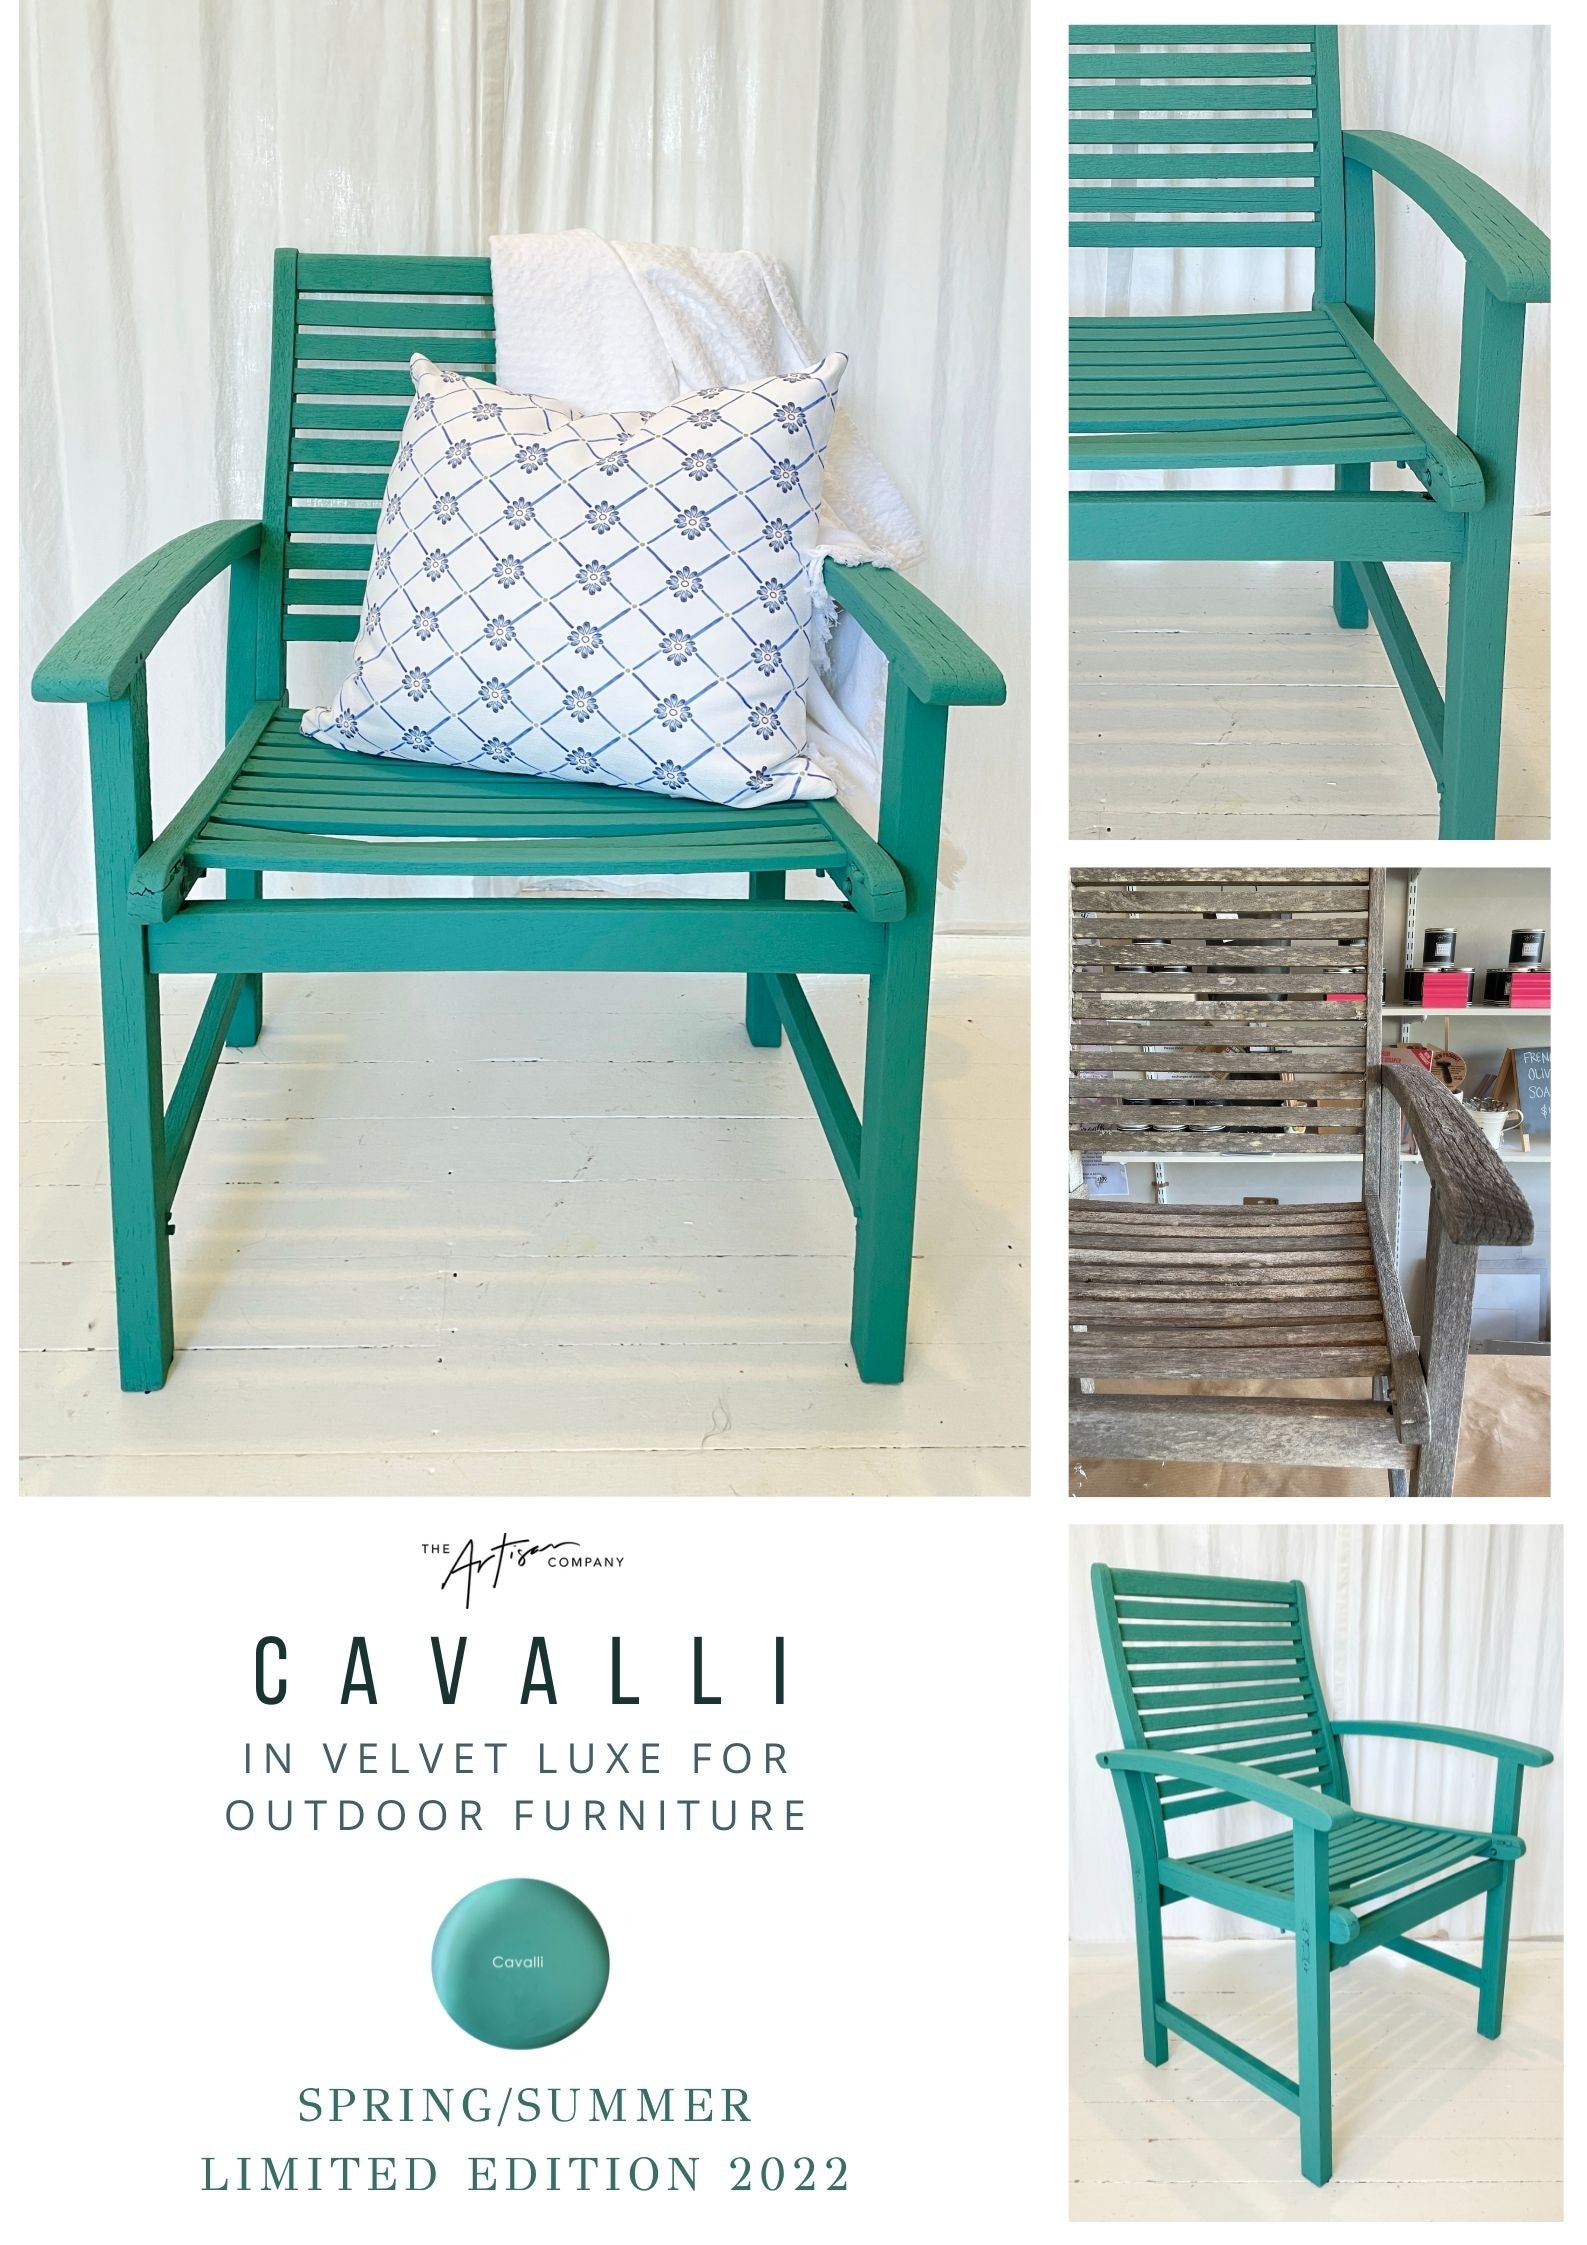 Introducing Cavalli!